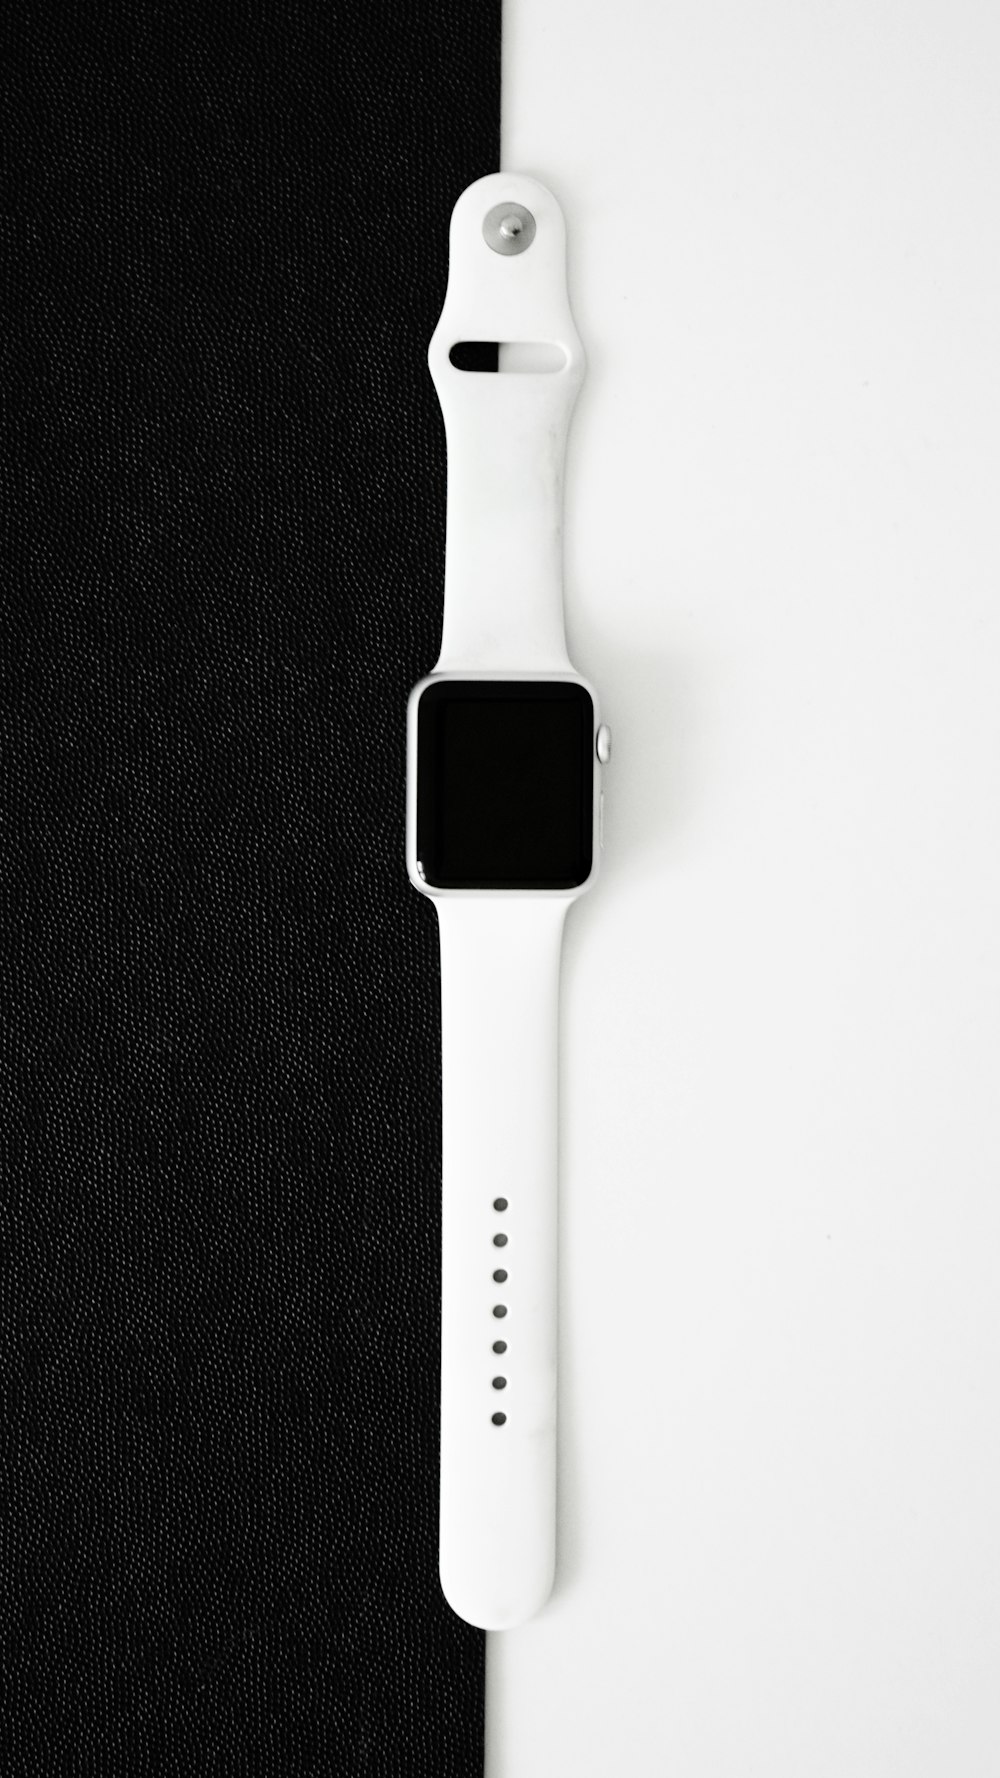 Eine Apple Watch sitzt auf einem schwarzen Tuch